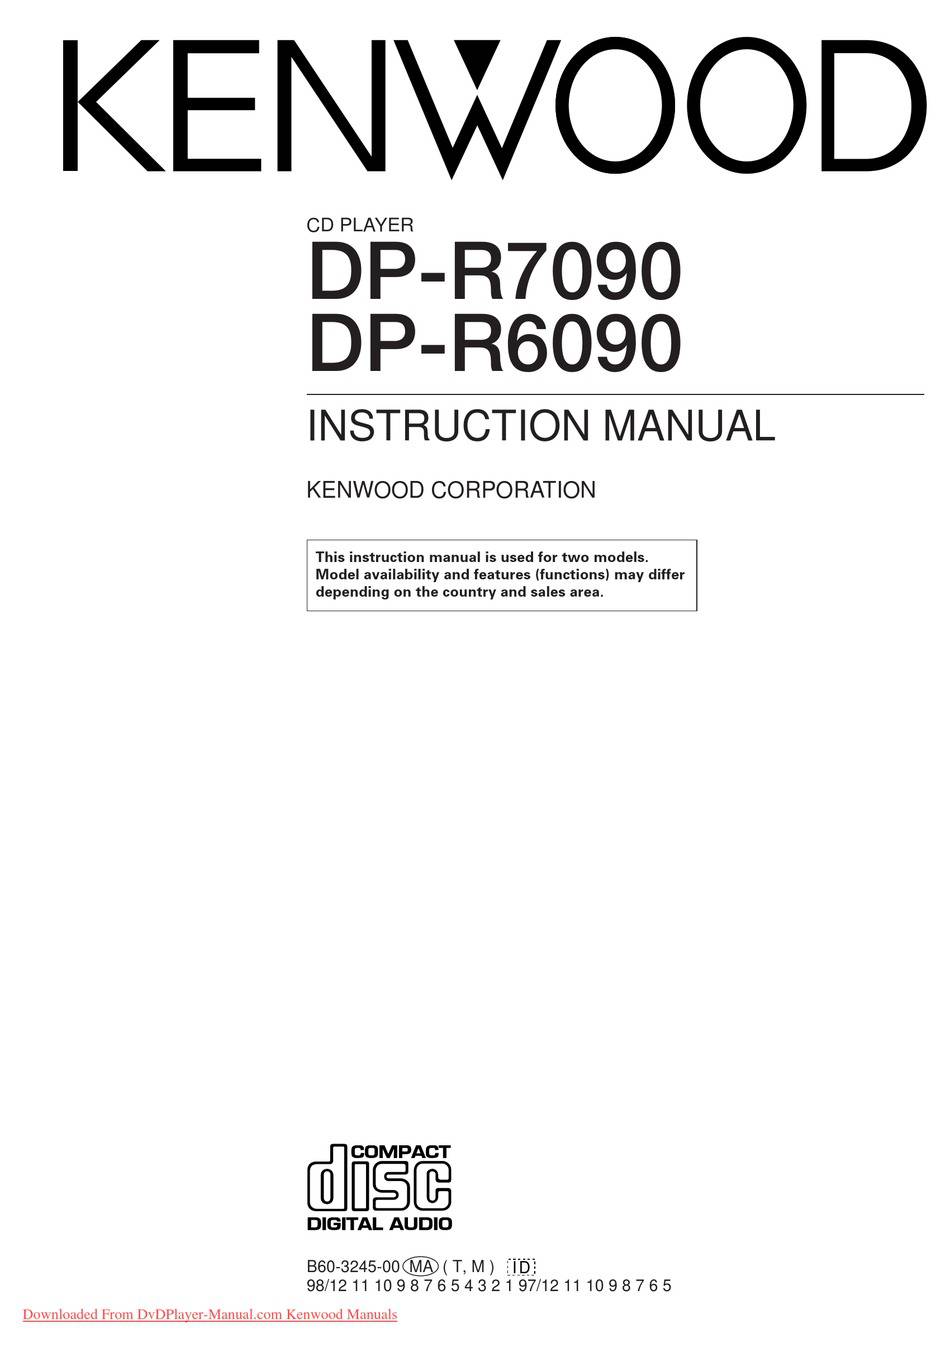 Kenwood DP-R7090